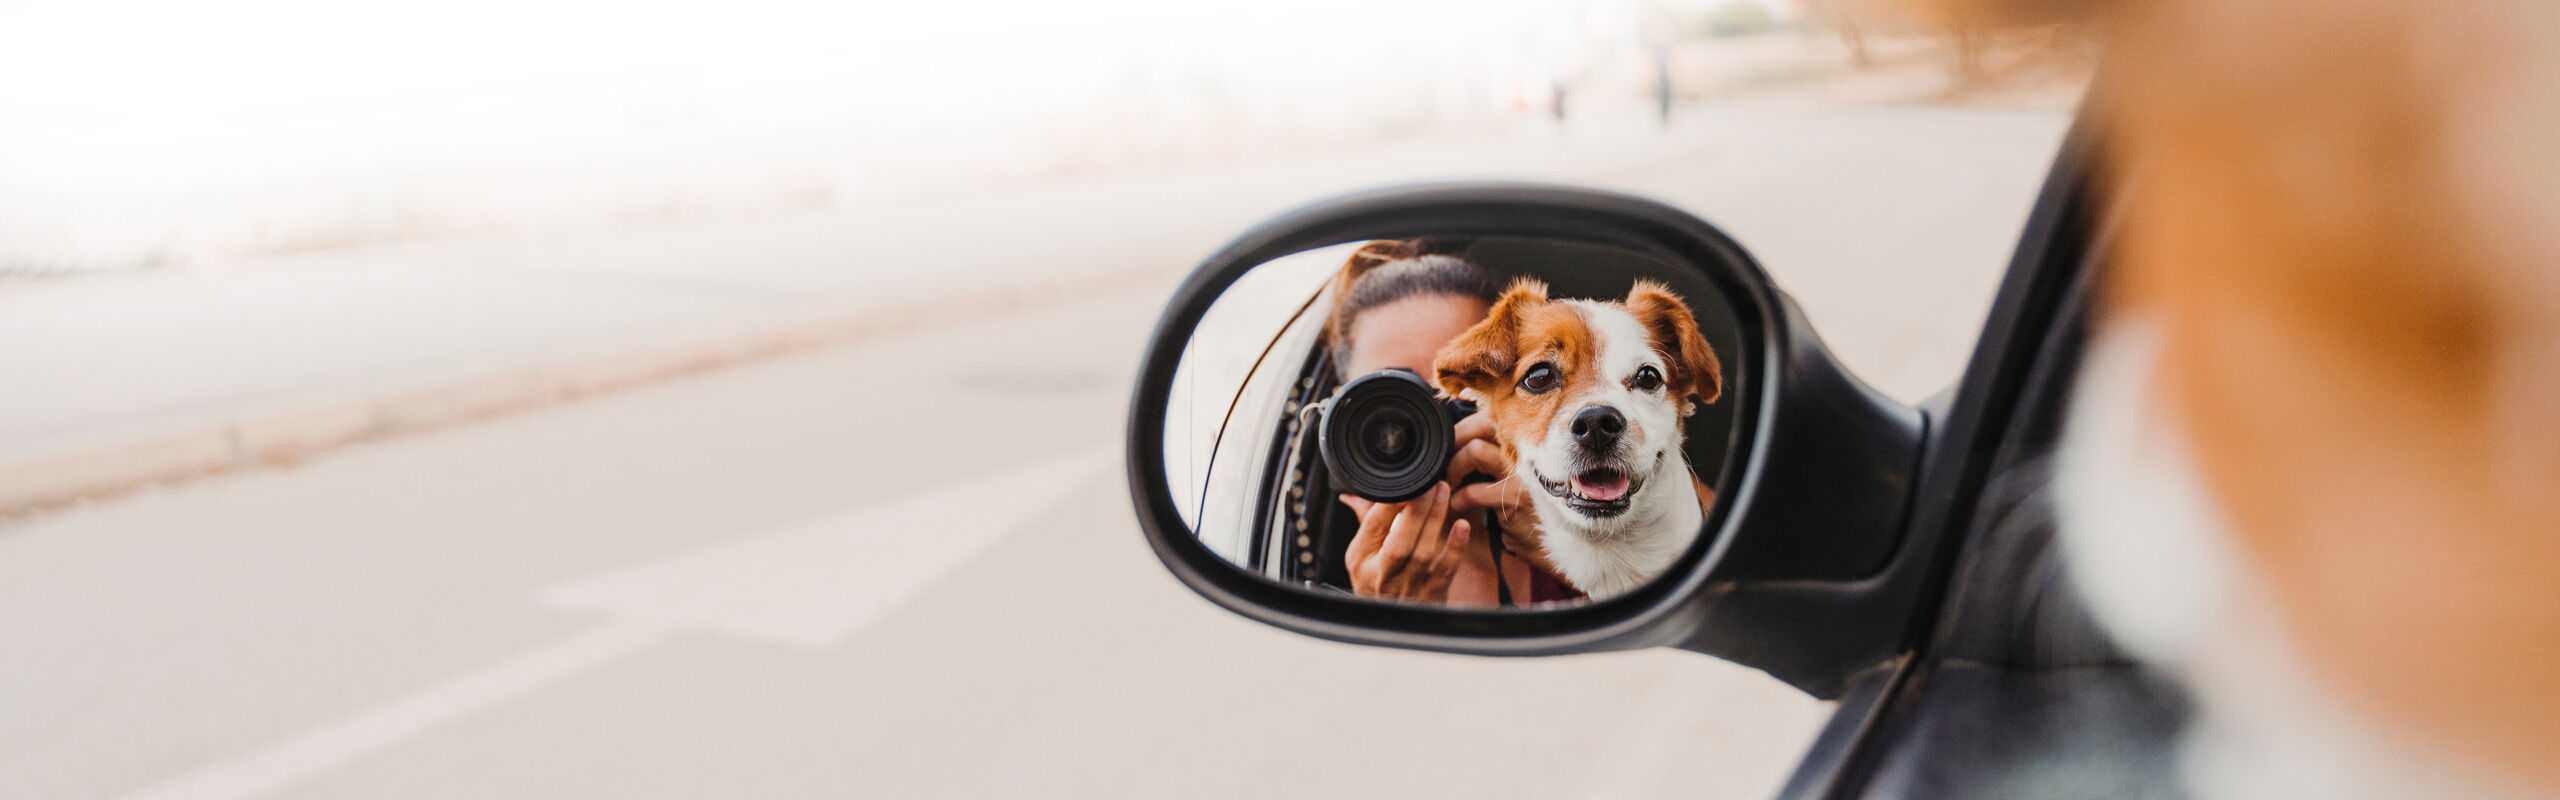 Hund unterwegs Sicherheit Auto